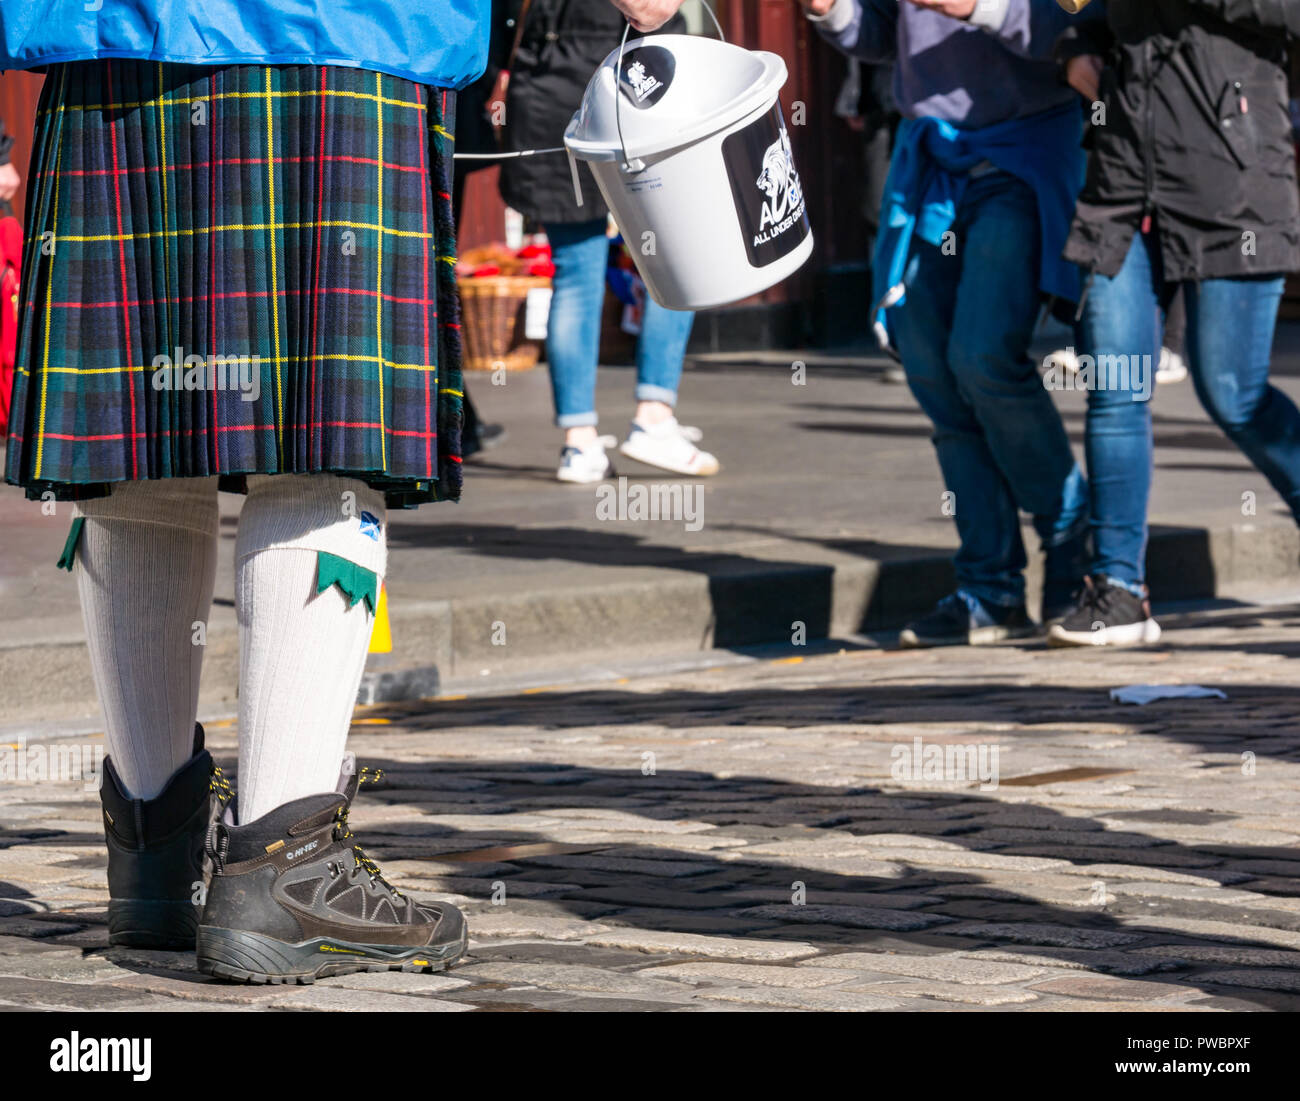 Mann im Kilt sammeln Spenden für Alle unter einem Banner AUOB schottische Unabhängigkeit März 2018, Royal Mile, Edinburgh, Schottland, Großbritannien Stockfoto